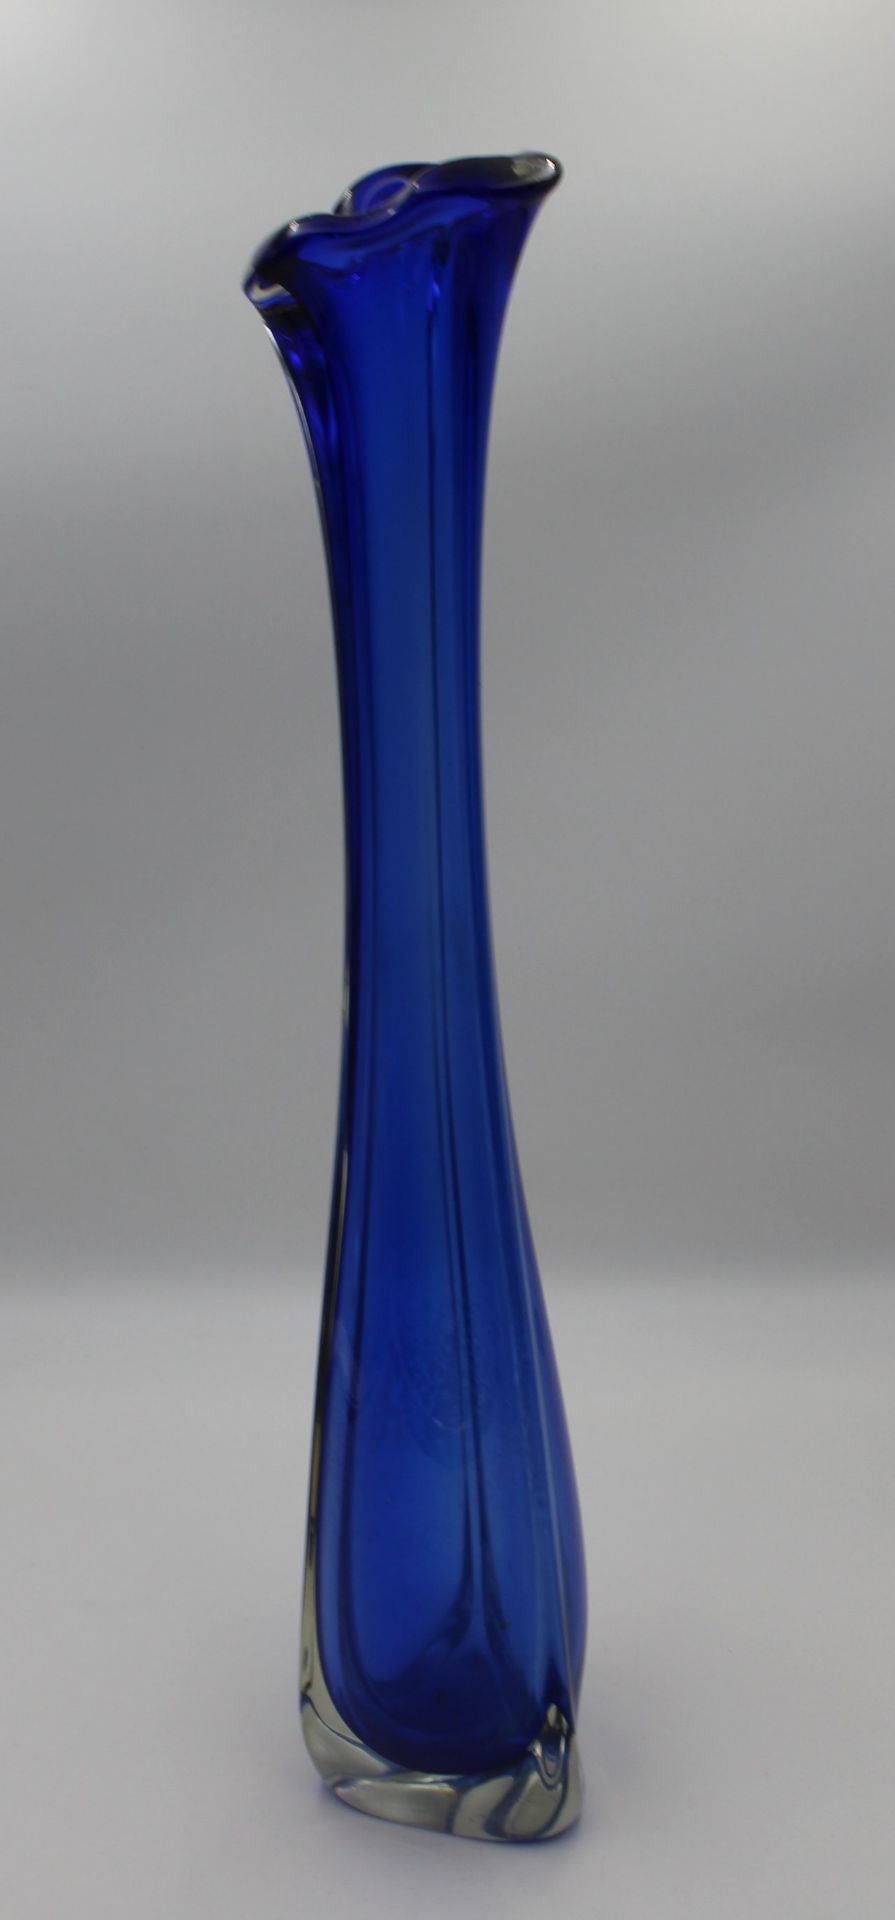 hohe Vase, wohl Murano, blau/klar, H-63cm, Boden mit Ablagerungen